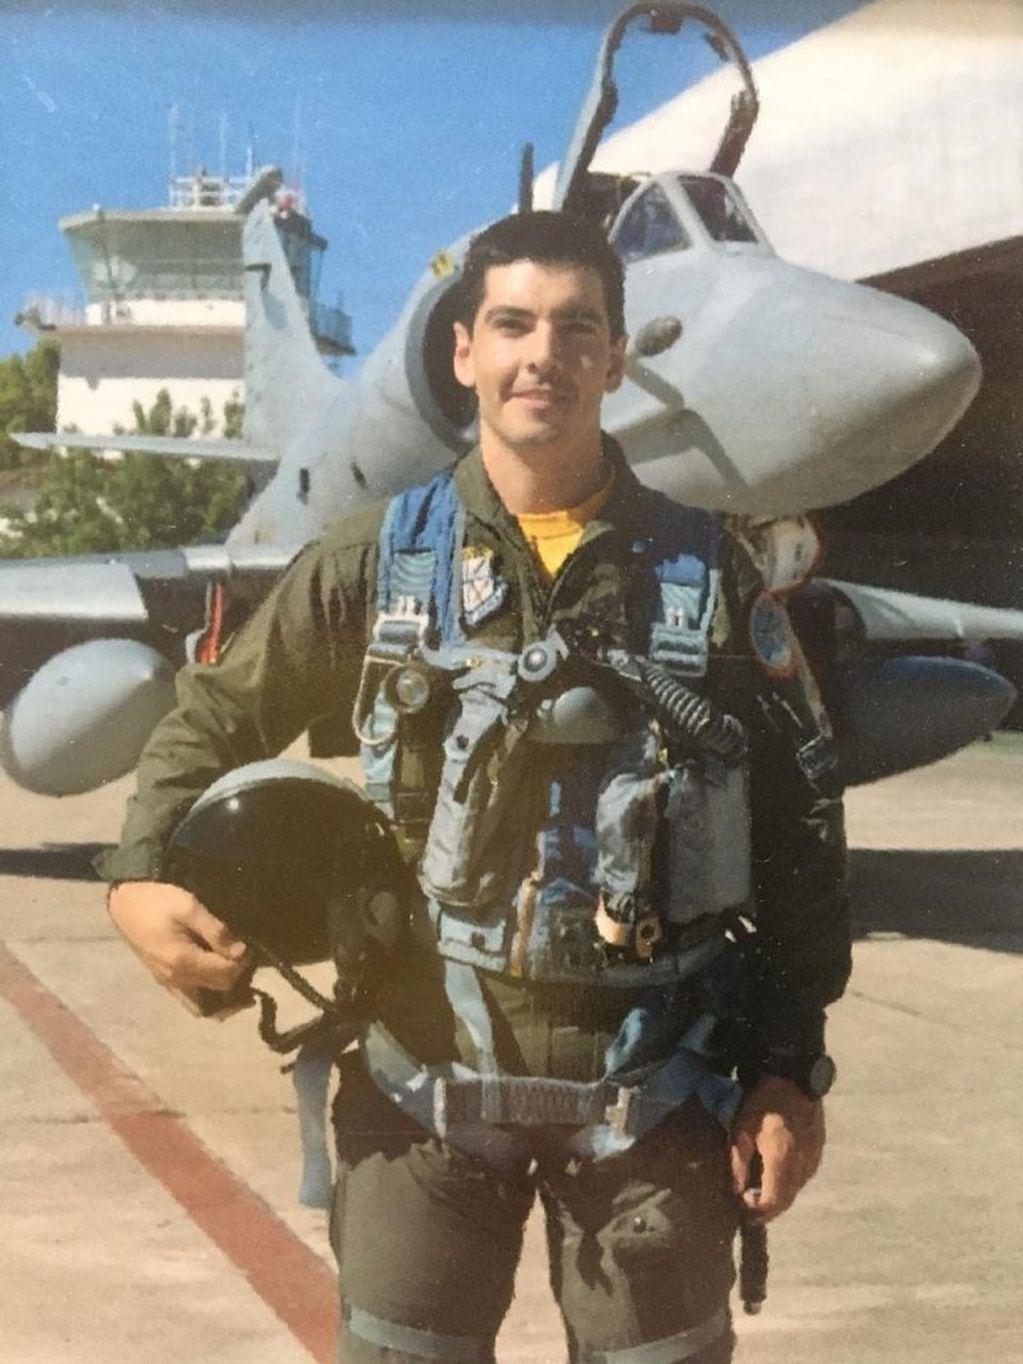 Capitán de la V Brigada de la Fuerza Aérea Argentina (FAA) Gonzalo Fabián Britos Venturini, quien falleció este miércoles al caer en Villa Valeria.